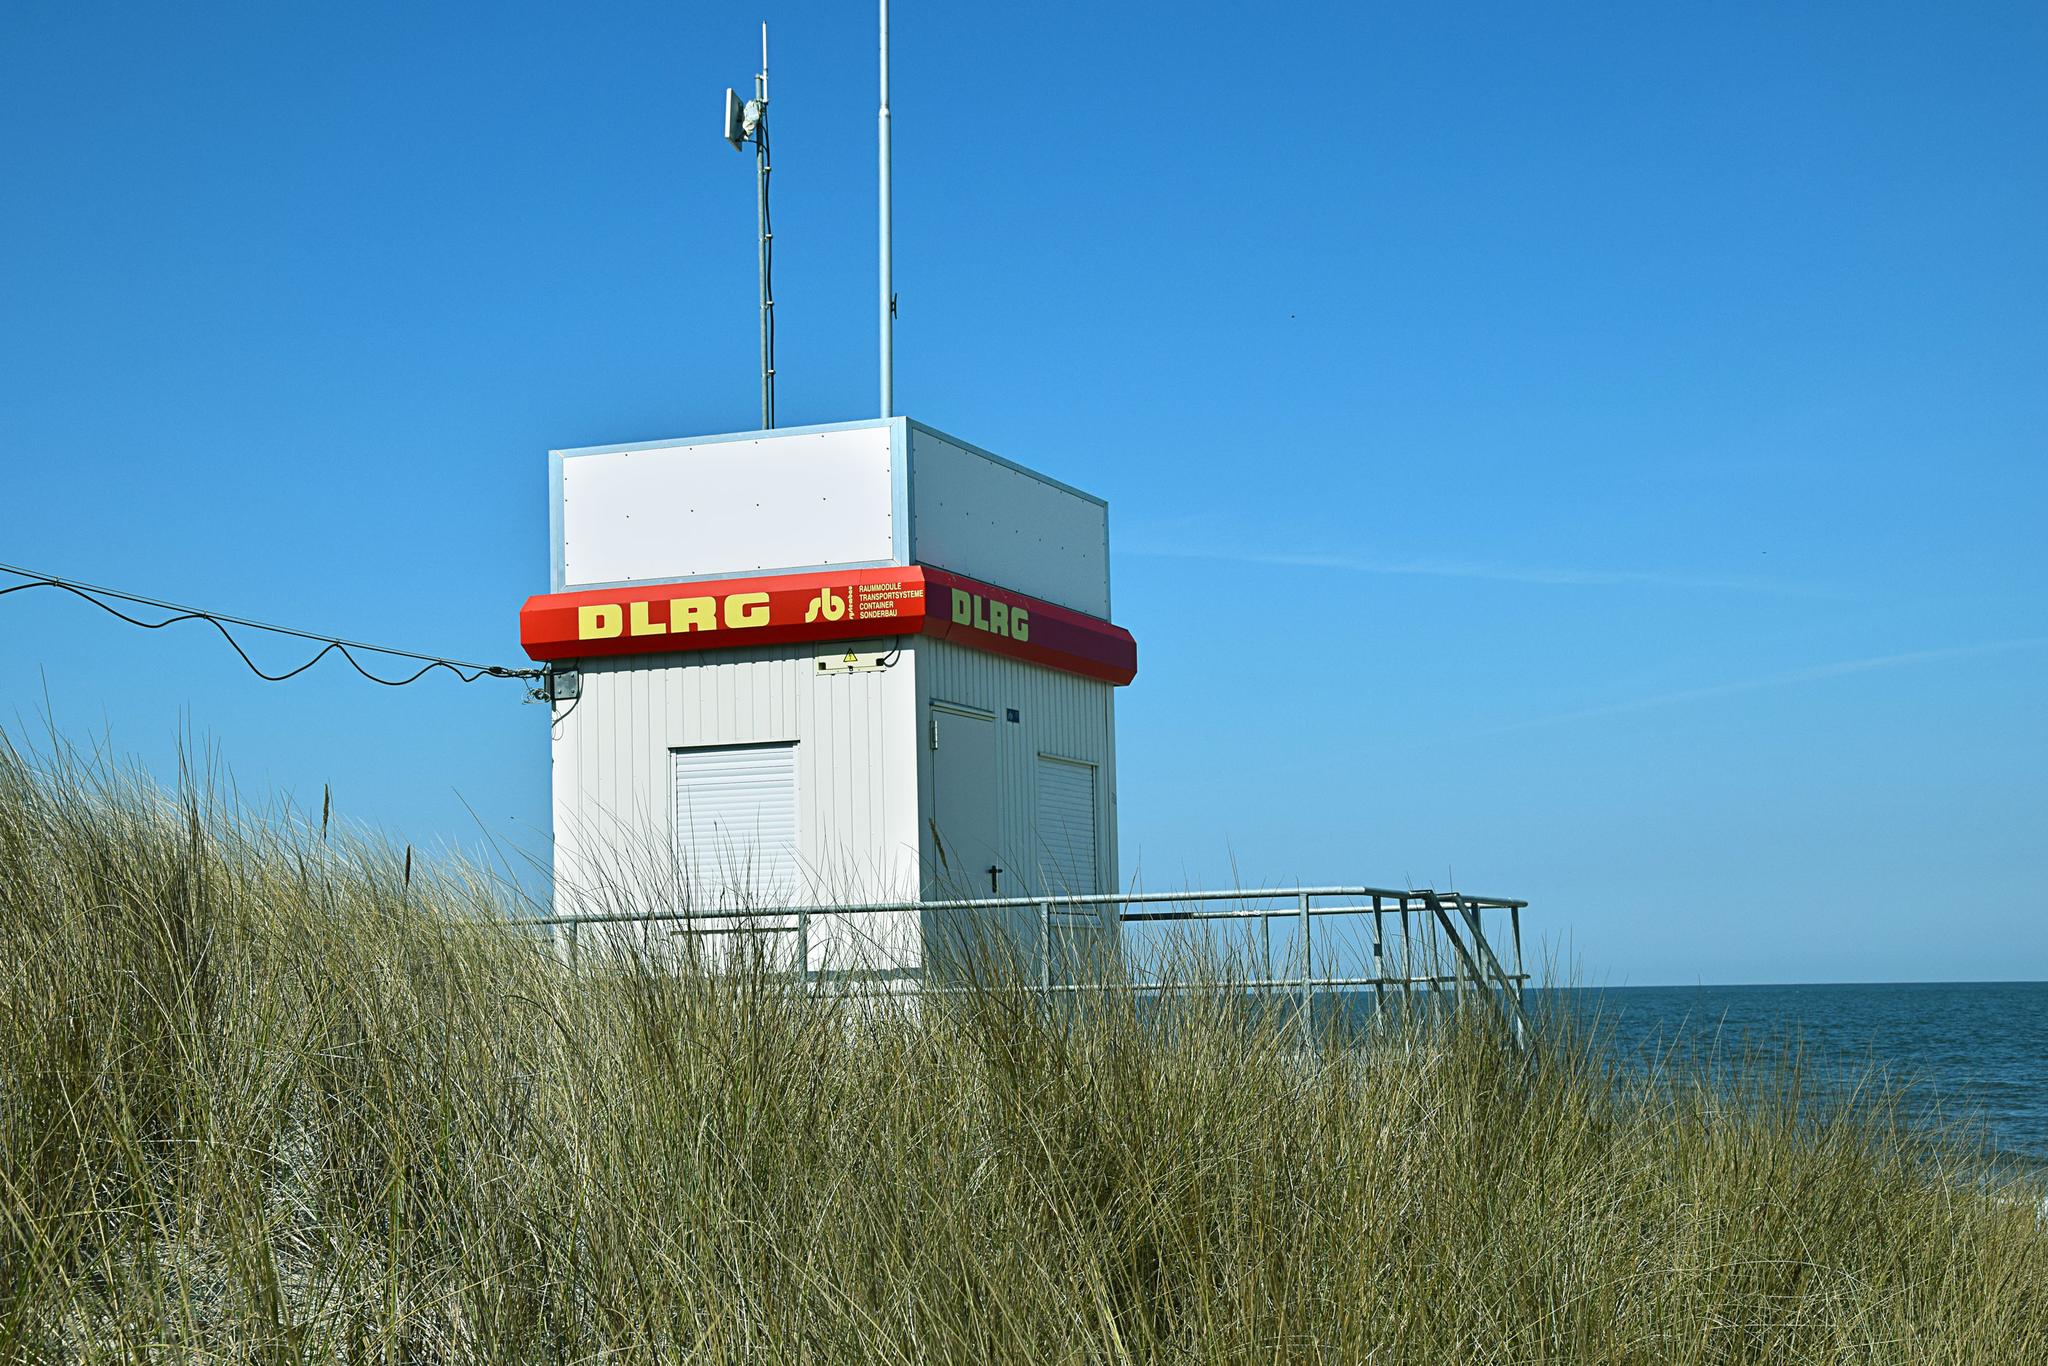 Wachturm mit DLRG-Aufschrift am Strand